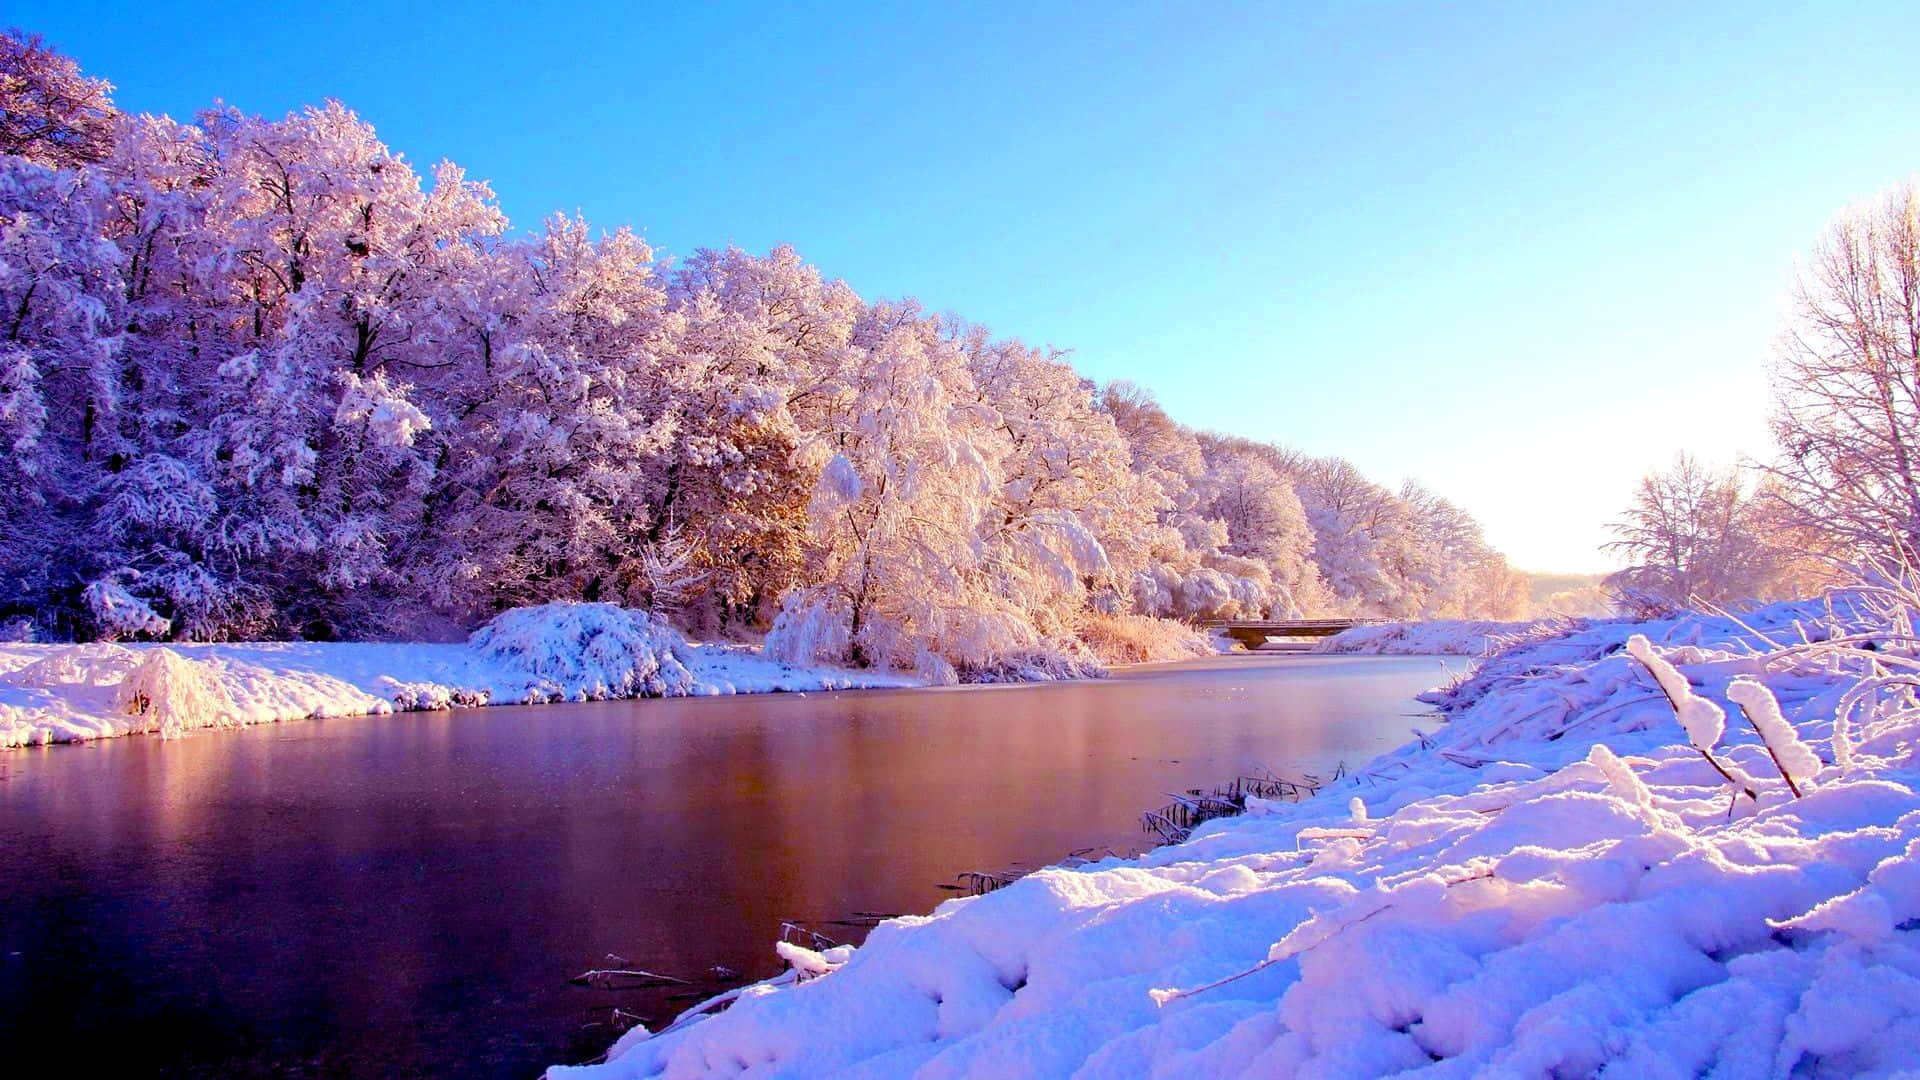 Experimentael Maravilloso Mundo Invernal Lleno De Nieve Con Esta Hermosa Imagen En 1080p.